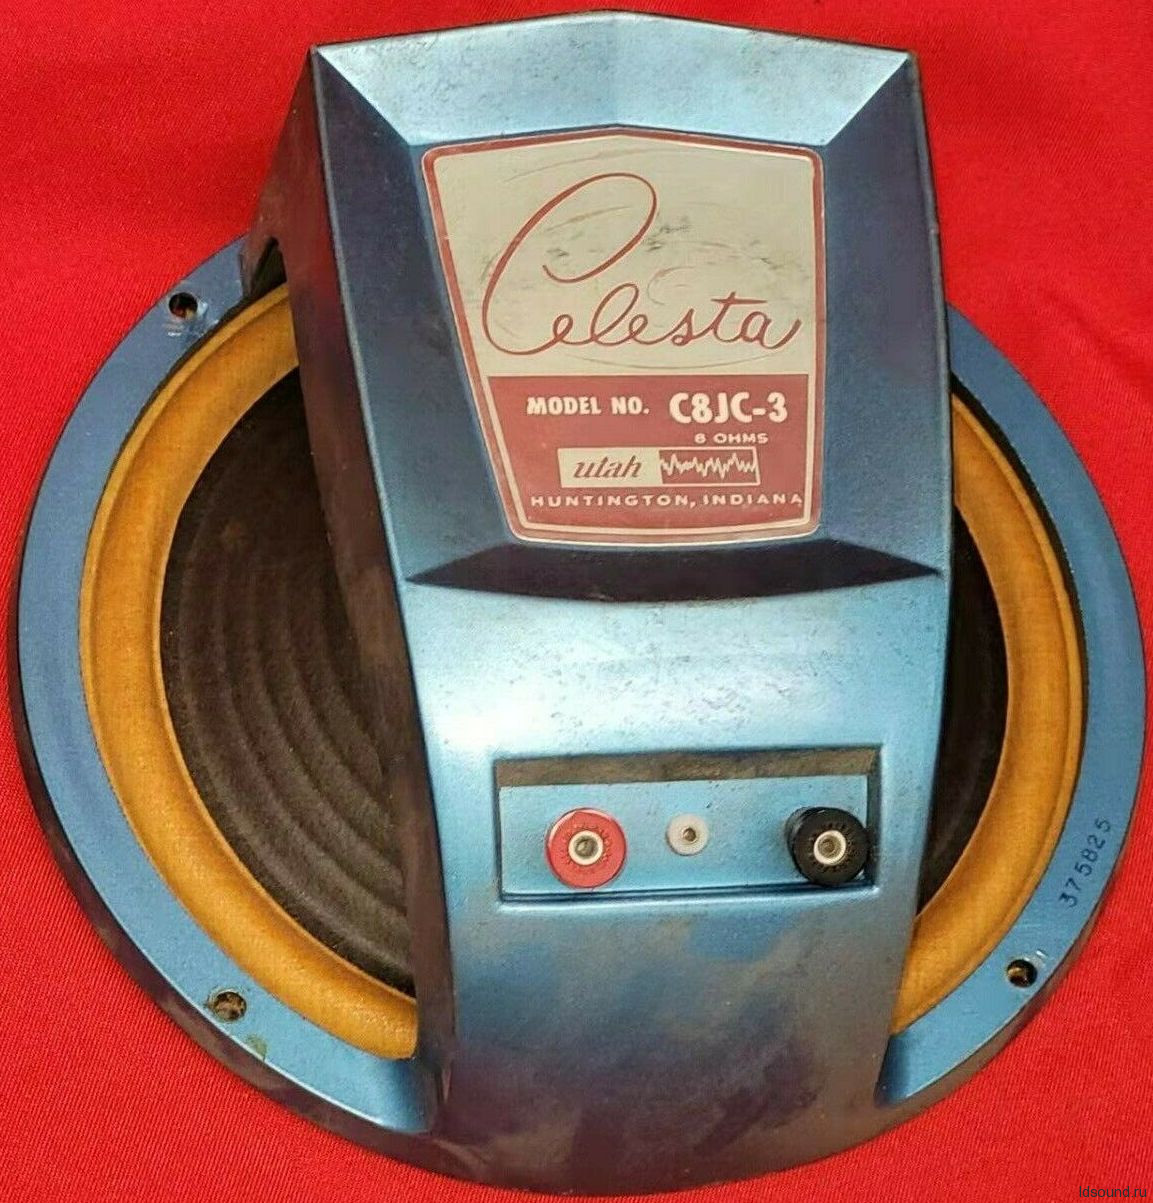 UTAH Celesta C8JC-3